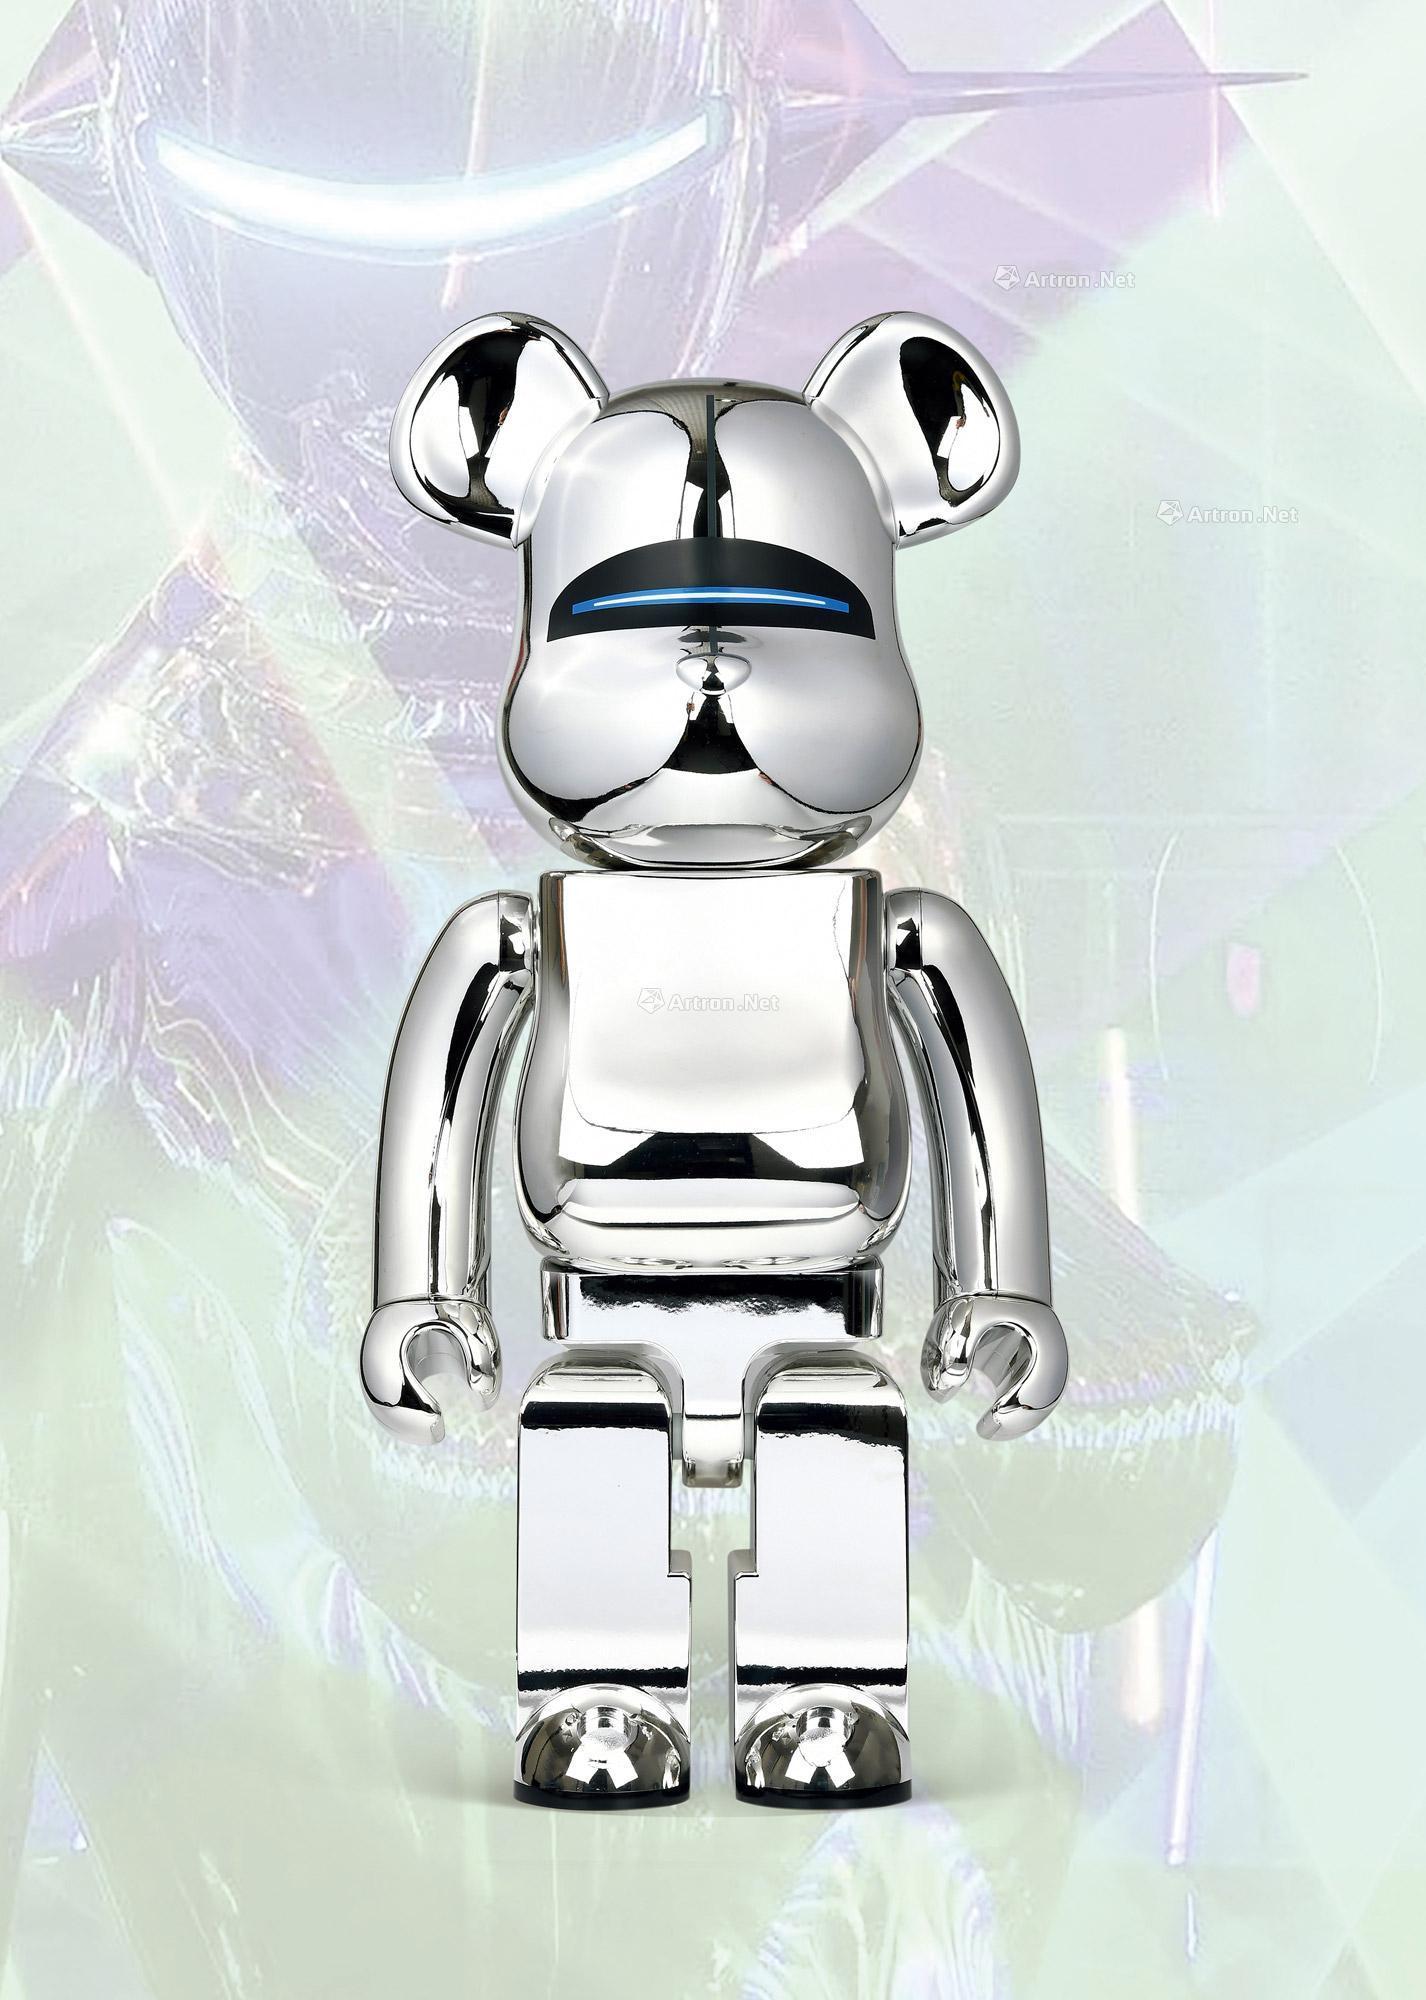 17年作be Rbrick 1000 Sorayama Sexy Robot 空山基机器人pvc 拍卖品 图片 价格 鉴赏 雕塑 雅昌艺术品拍卖网